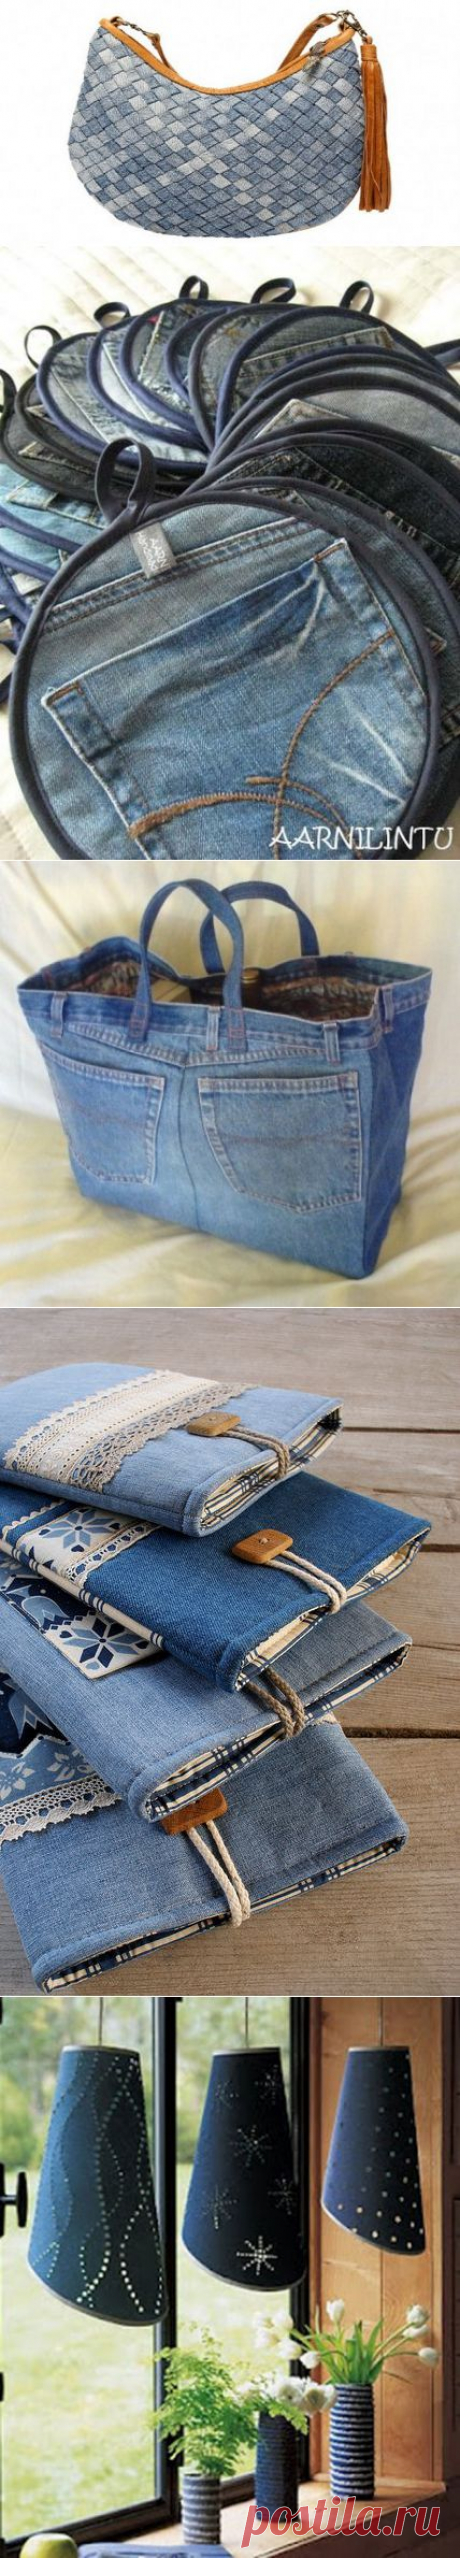 Что делать со старыми джинсами - 20 полезных советов | Ladiesvenue